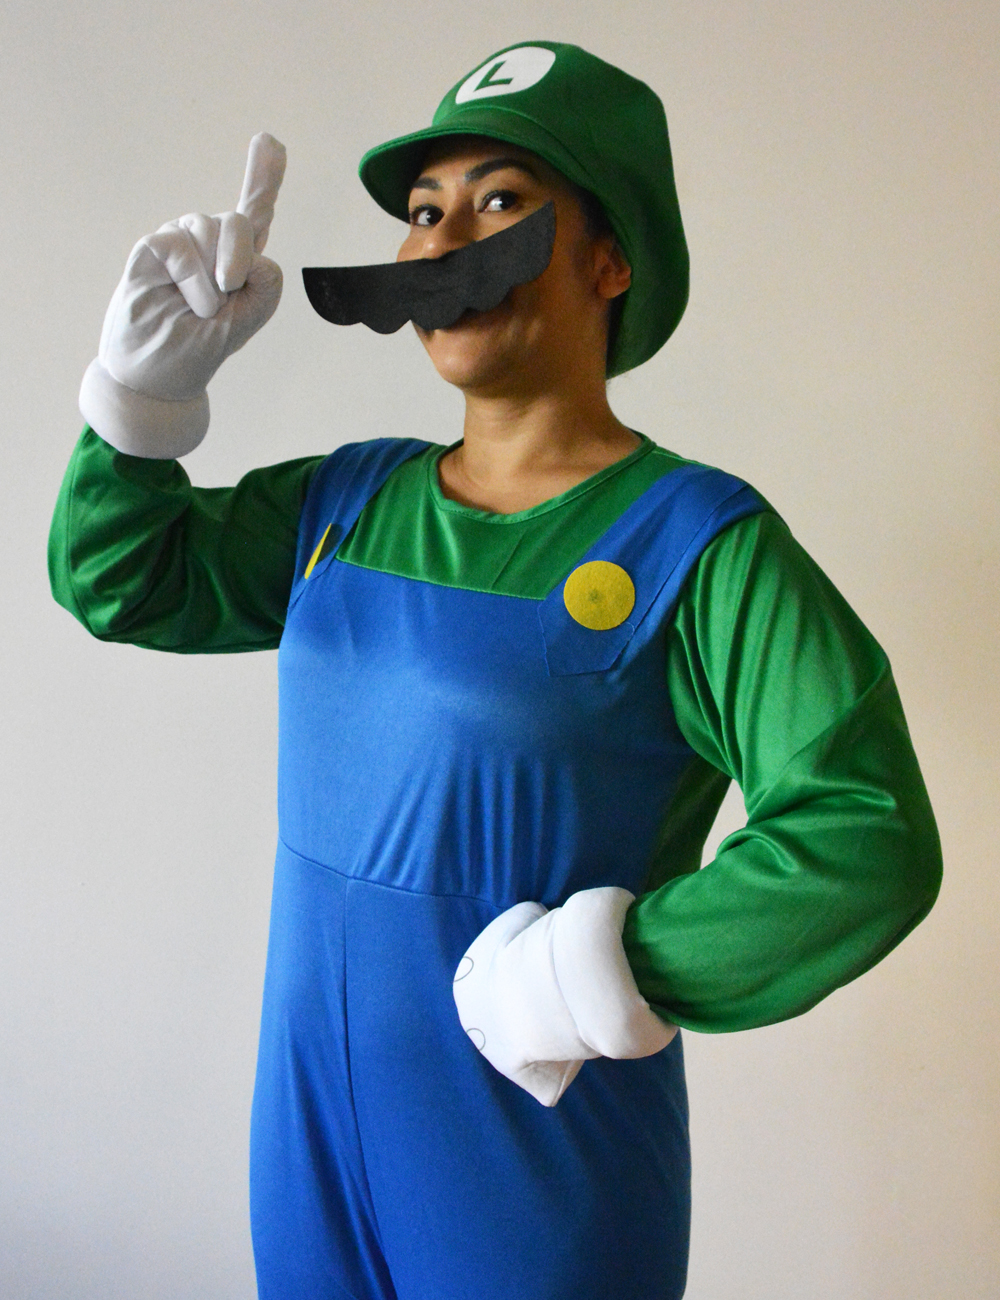 Luigi Halloween costume idea for MarioKart fansn